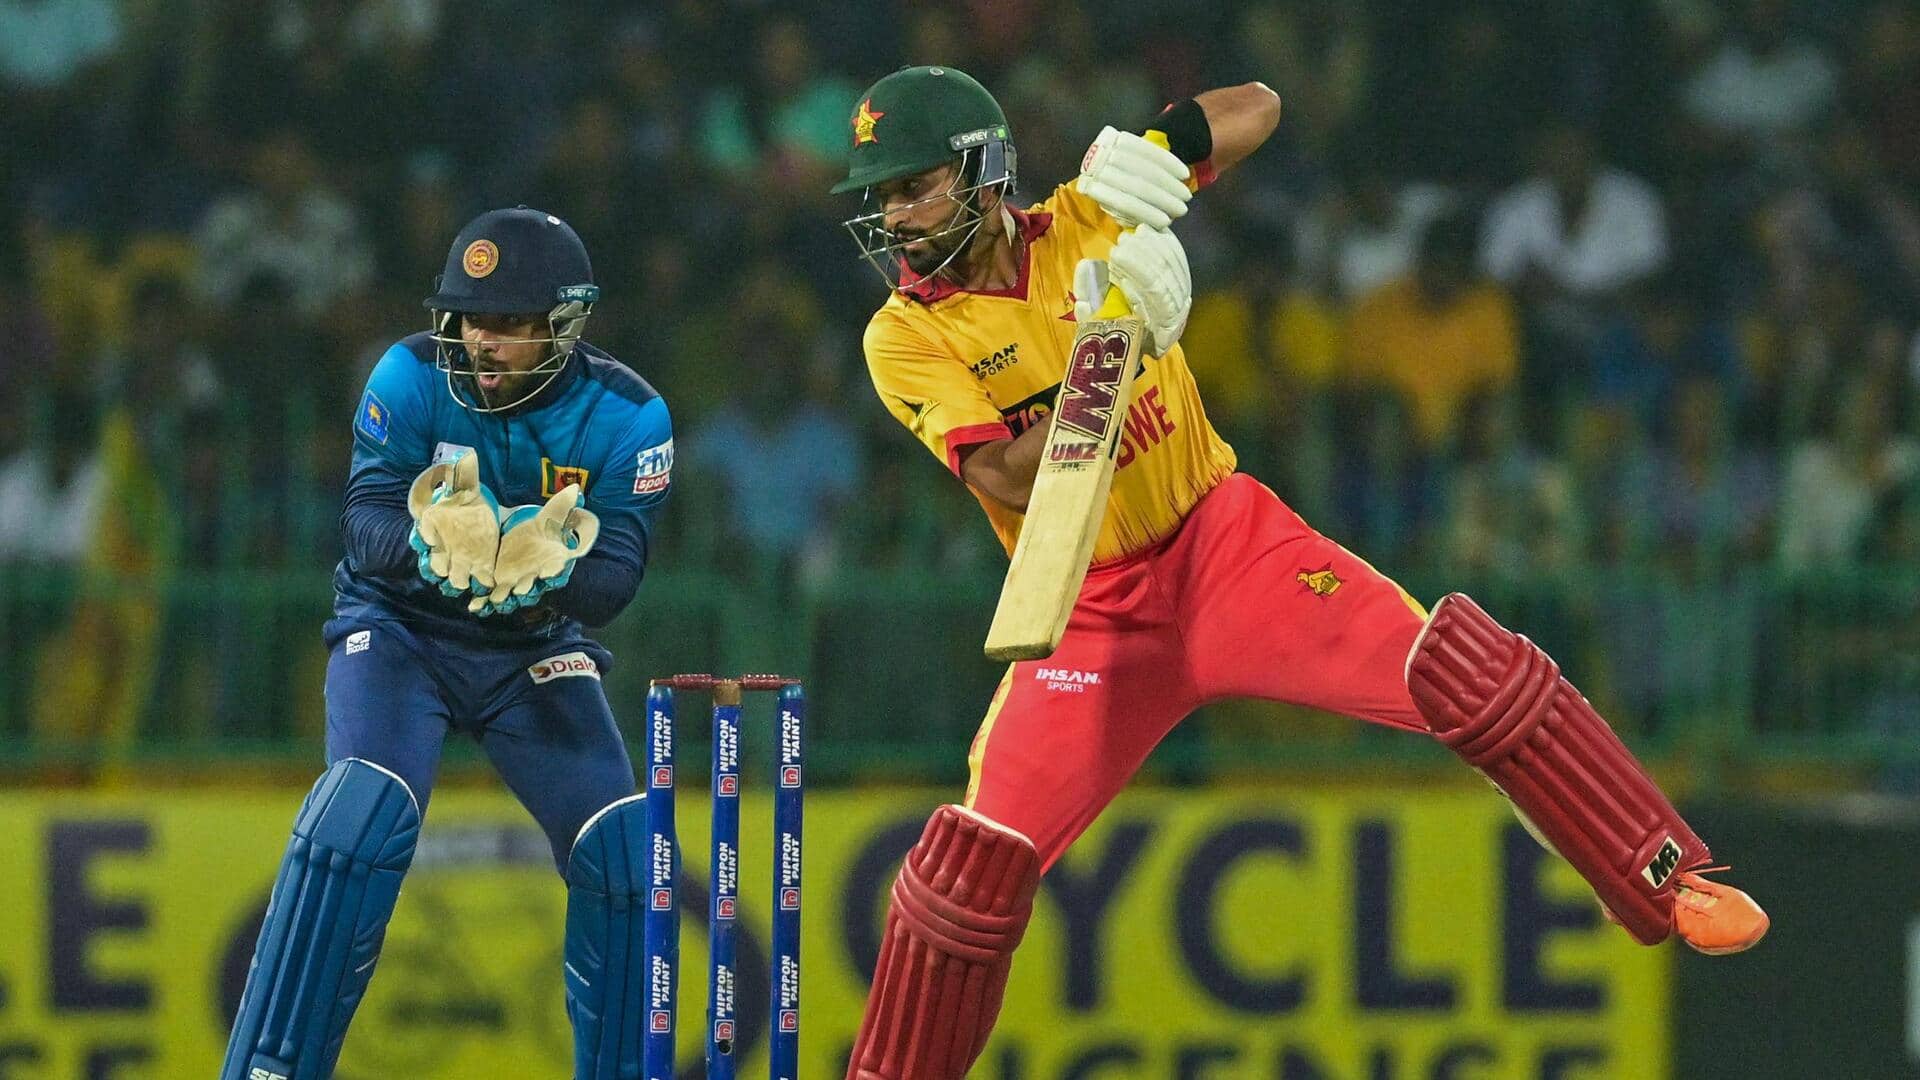 सिकंदर रजा टी-20 अंतरराष्ट्रीय में लगातार 5 अर्धशतक लगाने वाले पहले बल्लेबाज बने, जानिए उनके आंकड़े